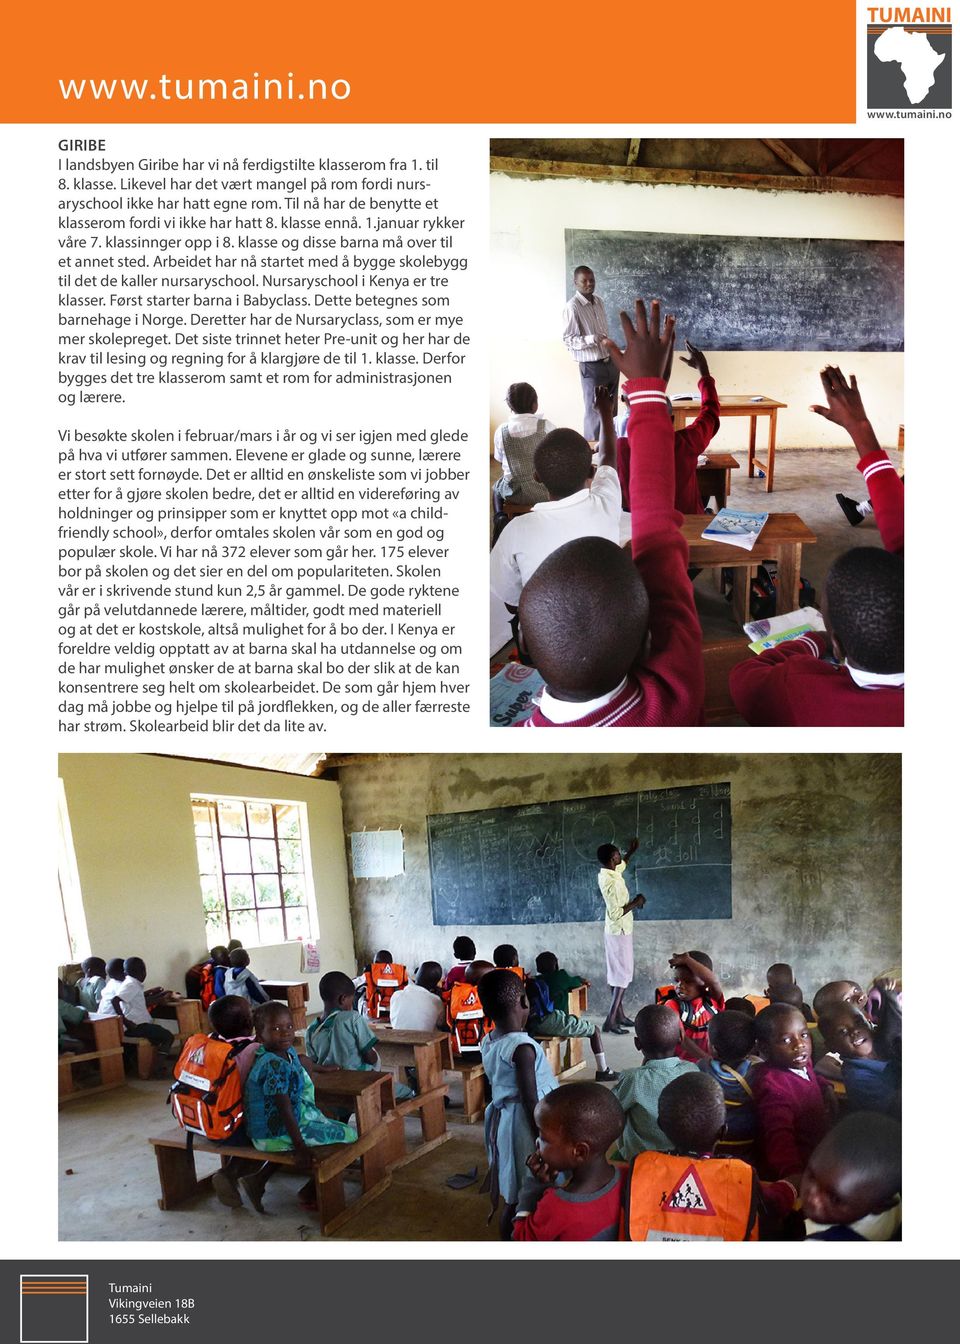 Arbeidet har nå startet med å bygge skolebygg til det de kaller nursaryschool. Nursaryschool i Kenya er tre klasser. Først starter barna i Babyclass. Dette betegnes som barnehage i Norge.